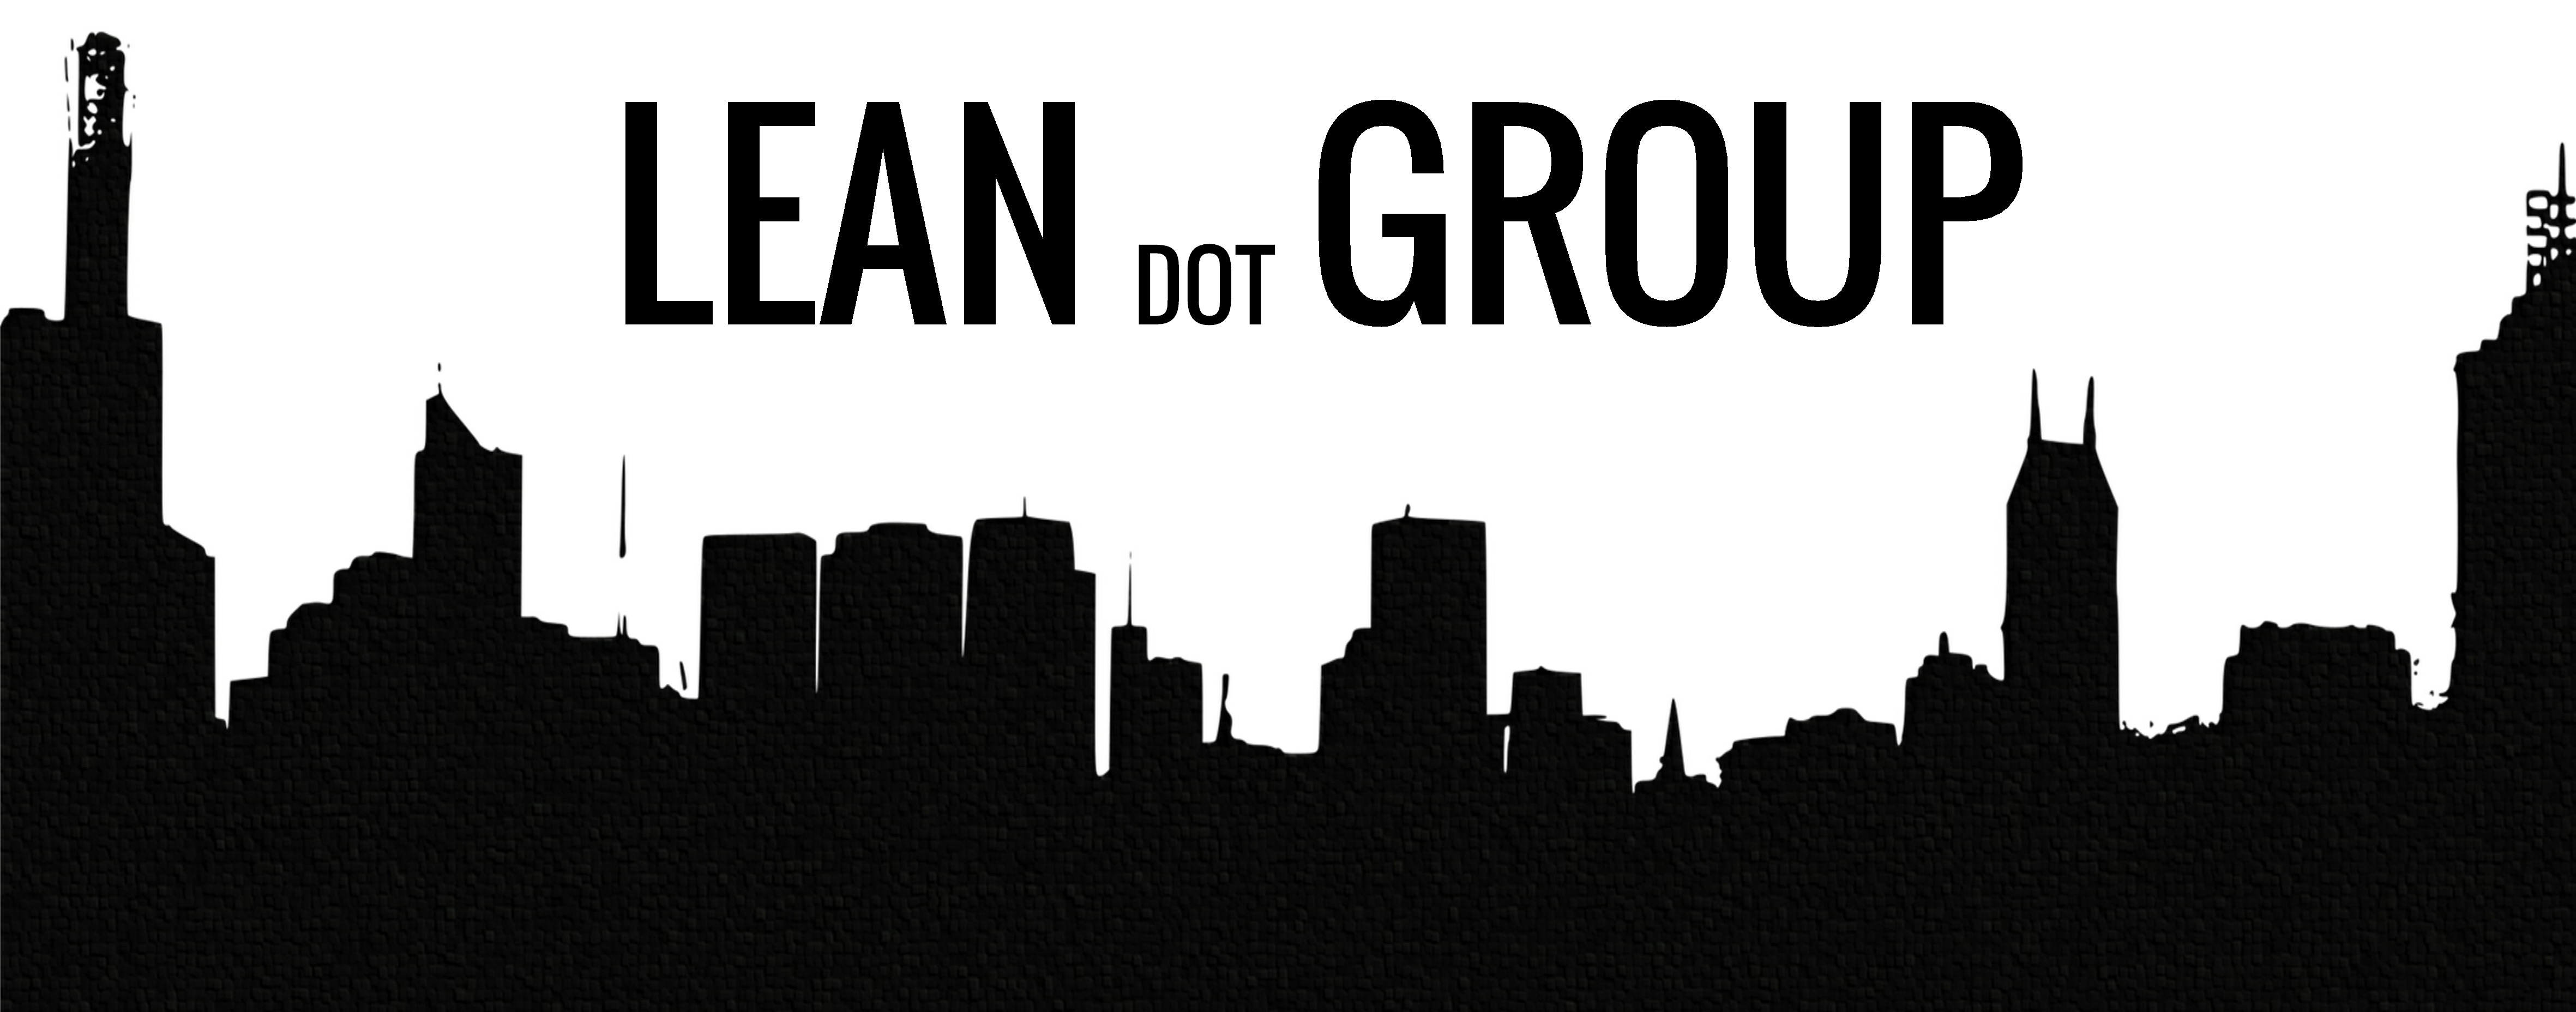 LEAN dot Group